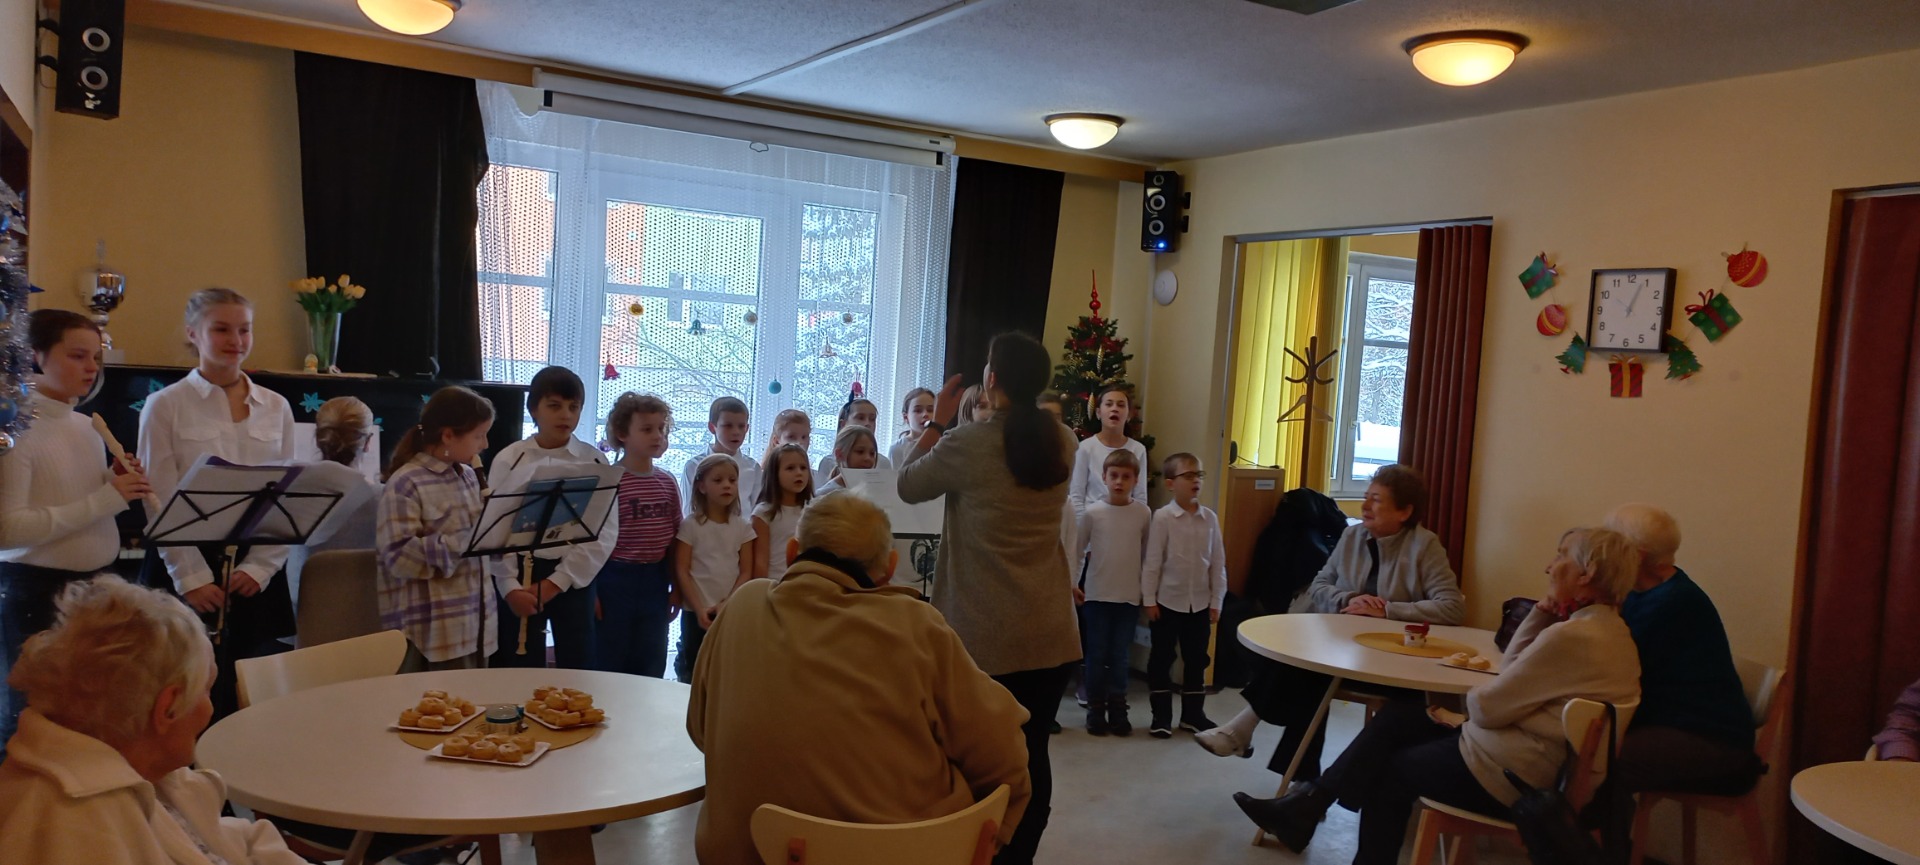 Vánoční vystoupení našich zpěváků a flétnistů pro seniory - Obrázek 1